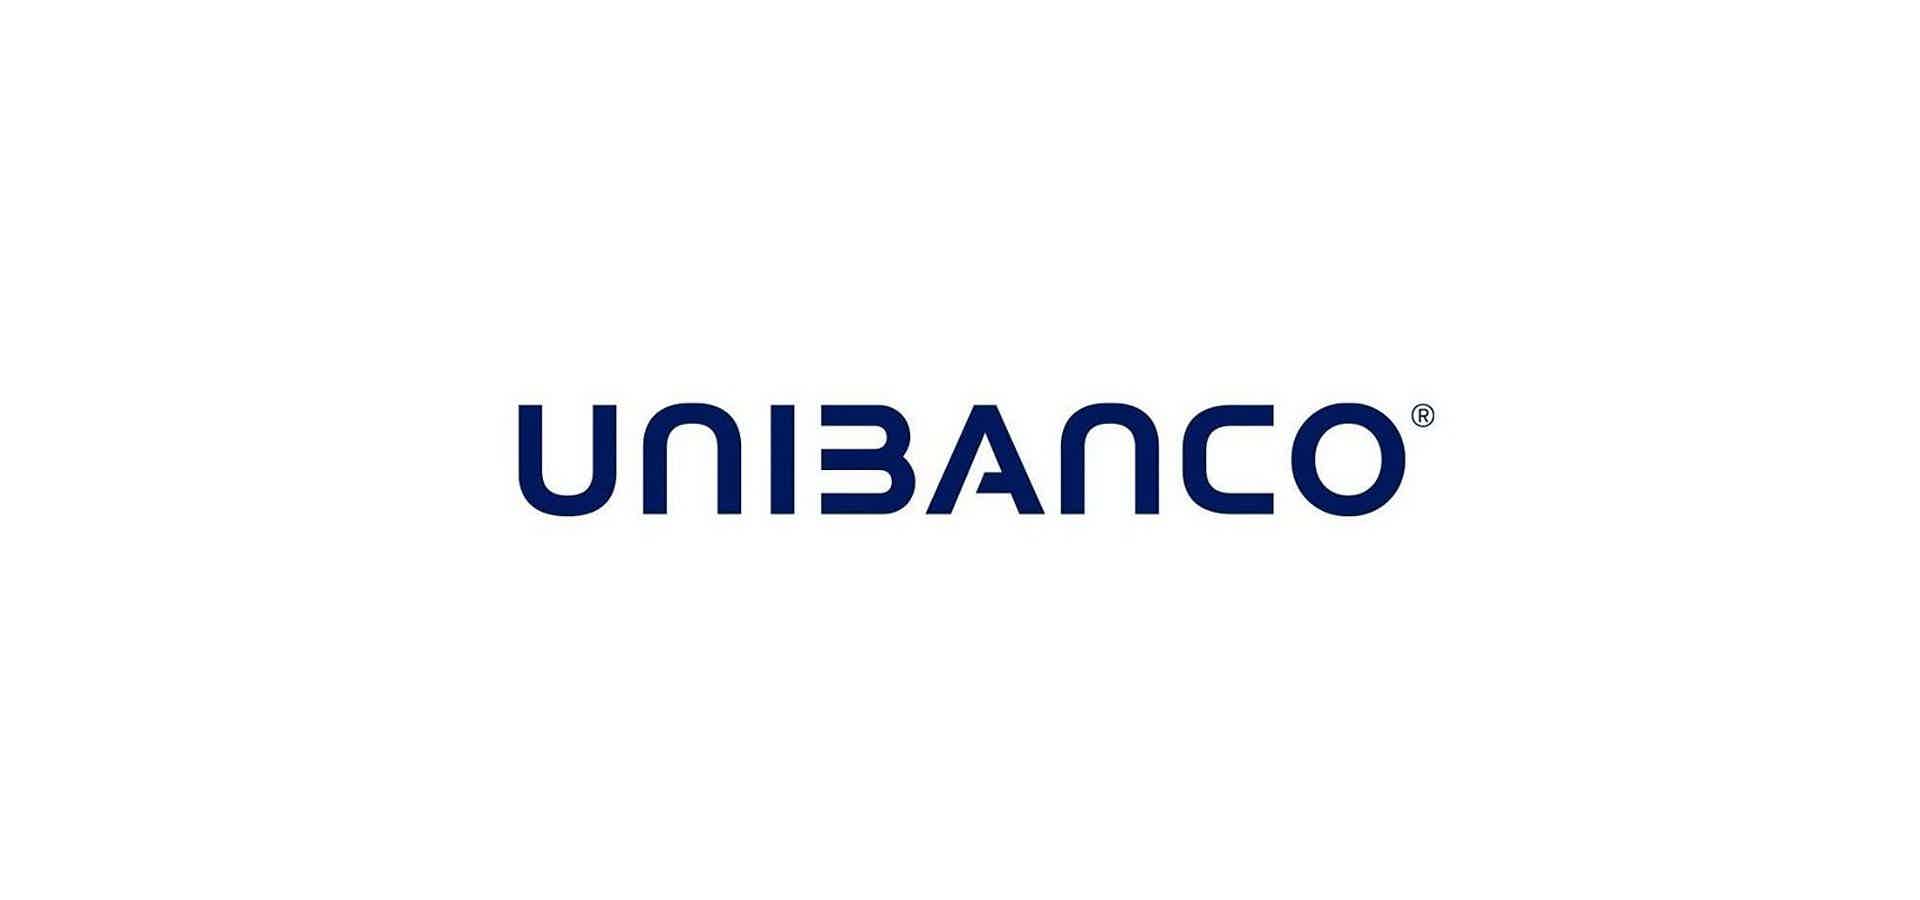 Mas, afinal, quais são as características do cartão de crédito Unibanco Life? Fonte: Unibanco.